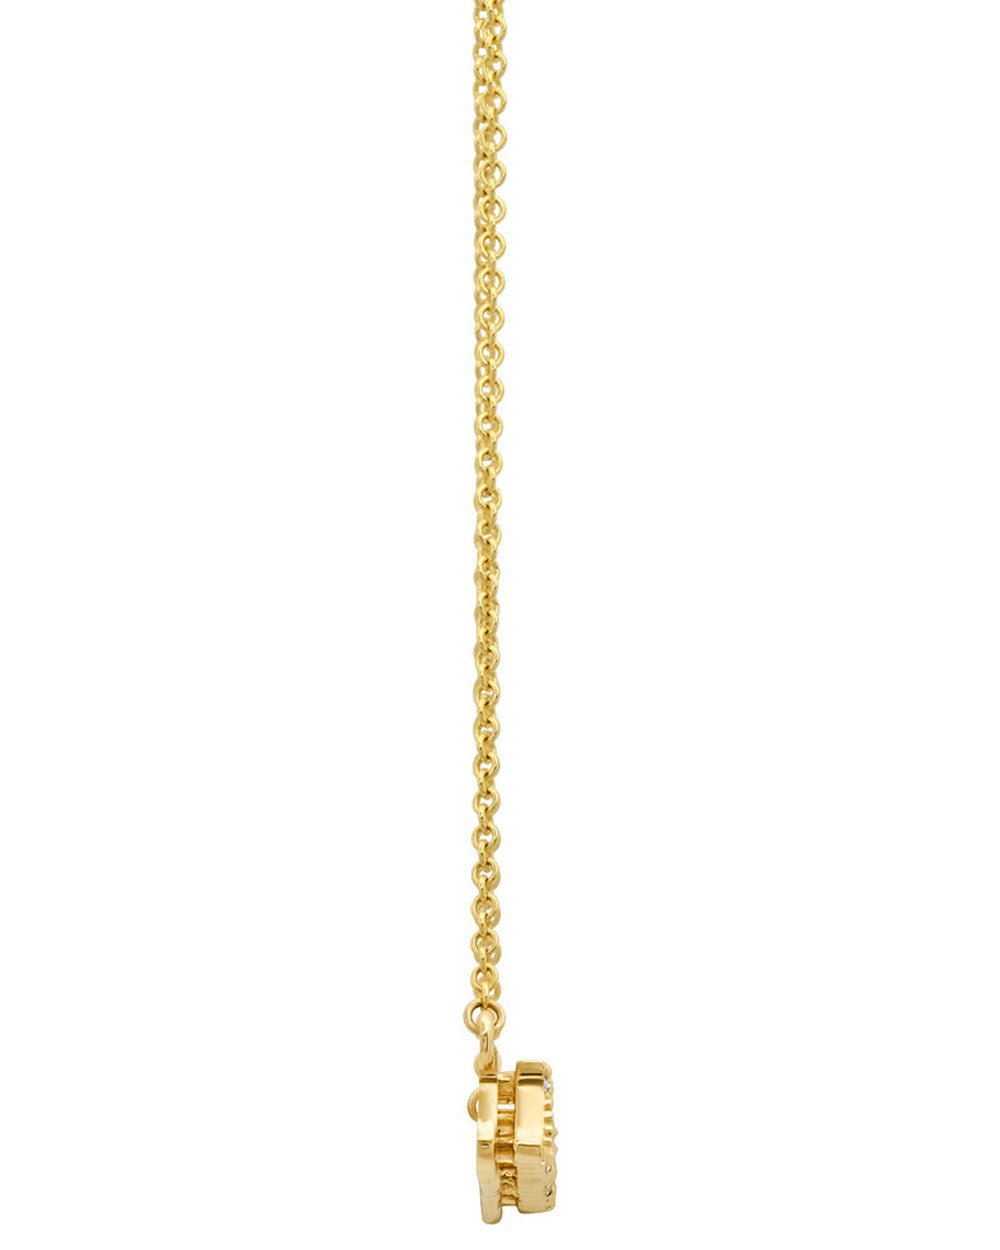 Mamacita Pave Diamond Pendant Necklace